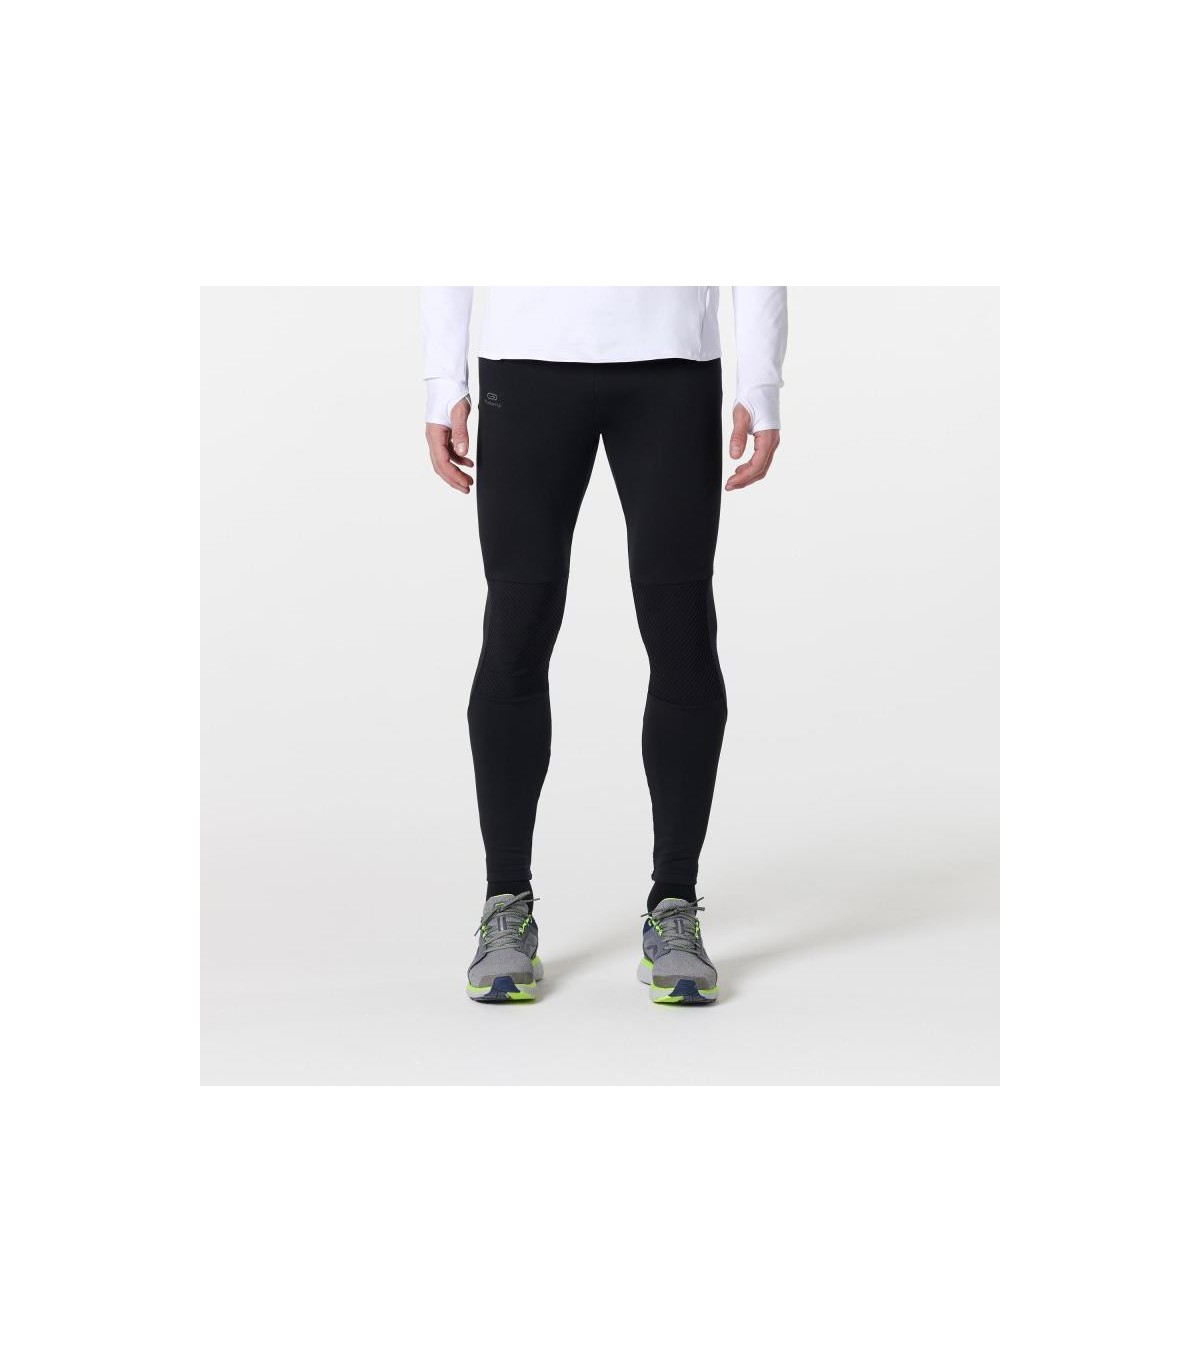 خرید اینترنتی انواع لگ ورزشی مردانه مخصوص دویدن  &#10003; تضمین اورجینال &#10003; ارسال رایگان 